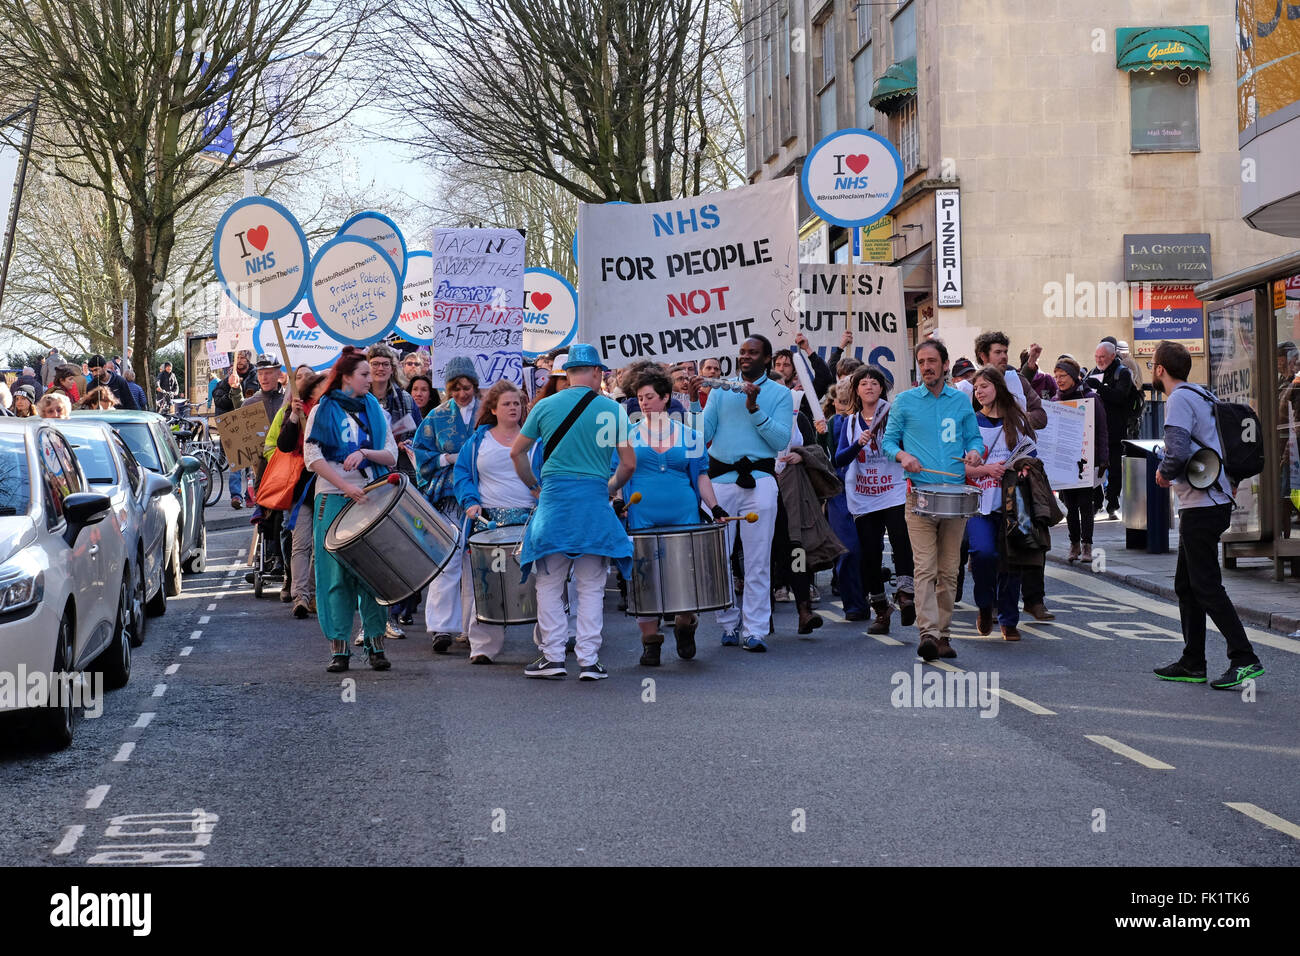 Demonstranten gegen die geplanten Änderungen des National Health Service marschieren durch die Straßen von Bristol, England. Stockfoto